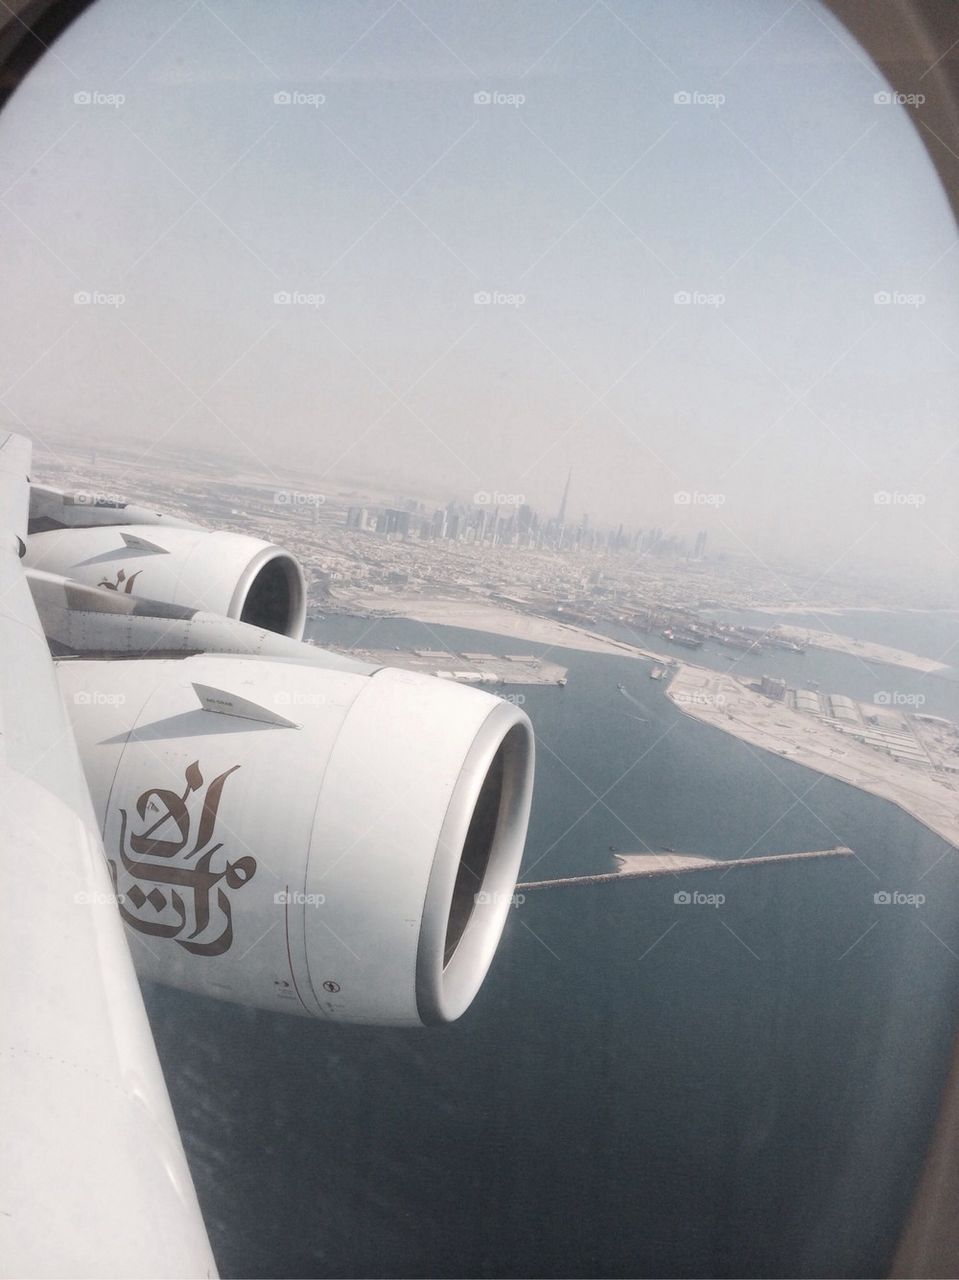 Dubai from the air.